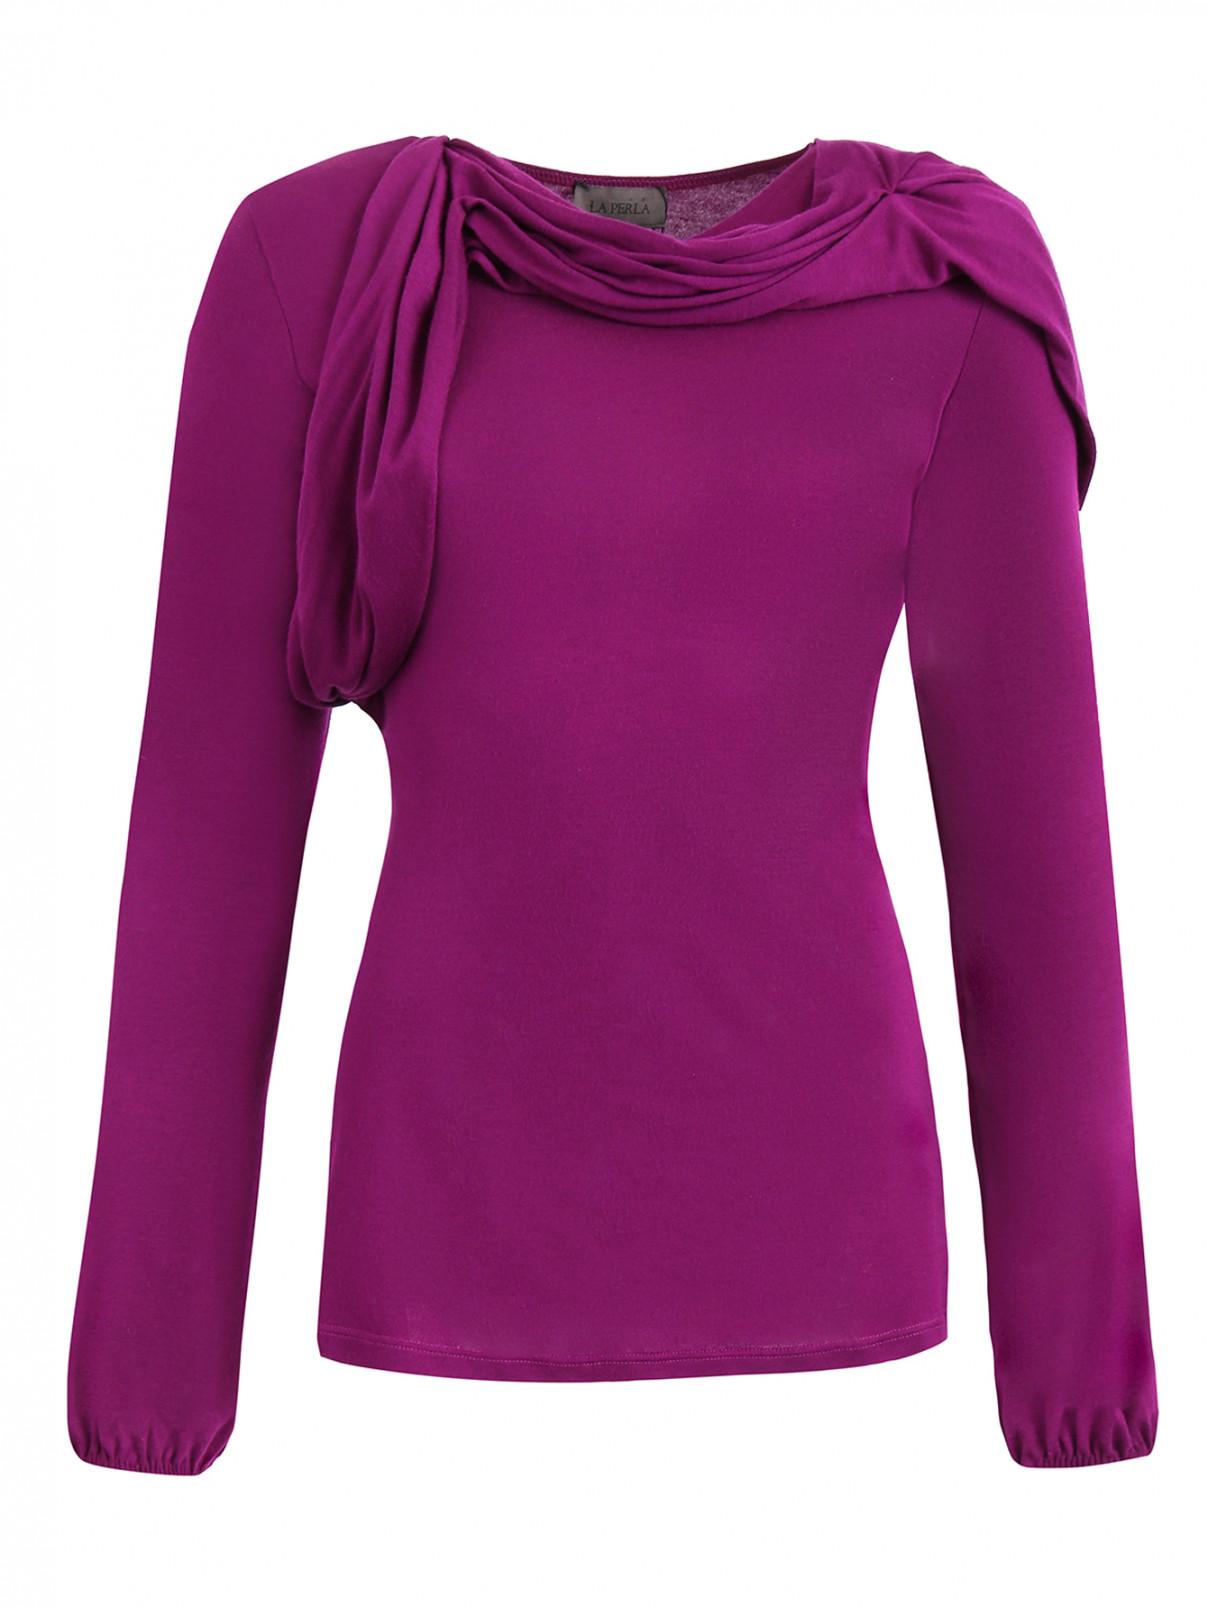 Блуза с драпировкой La Perla  –  Общий вид  – Цвет:  Фиолетовый